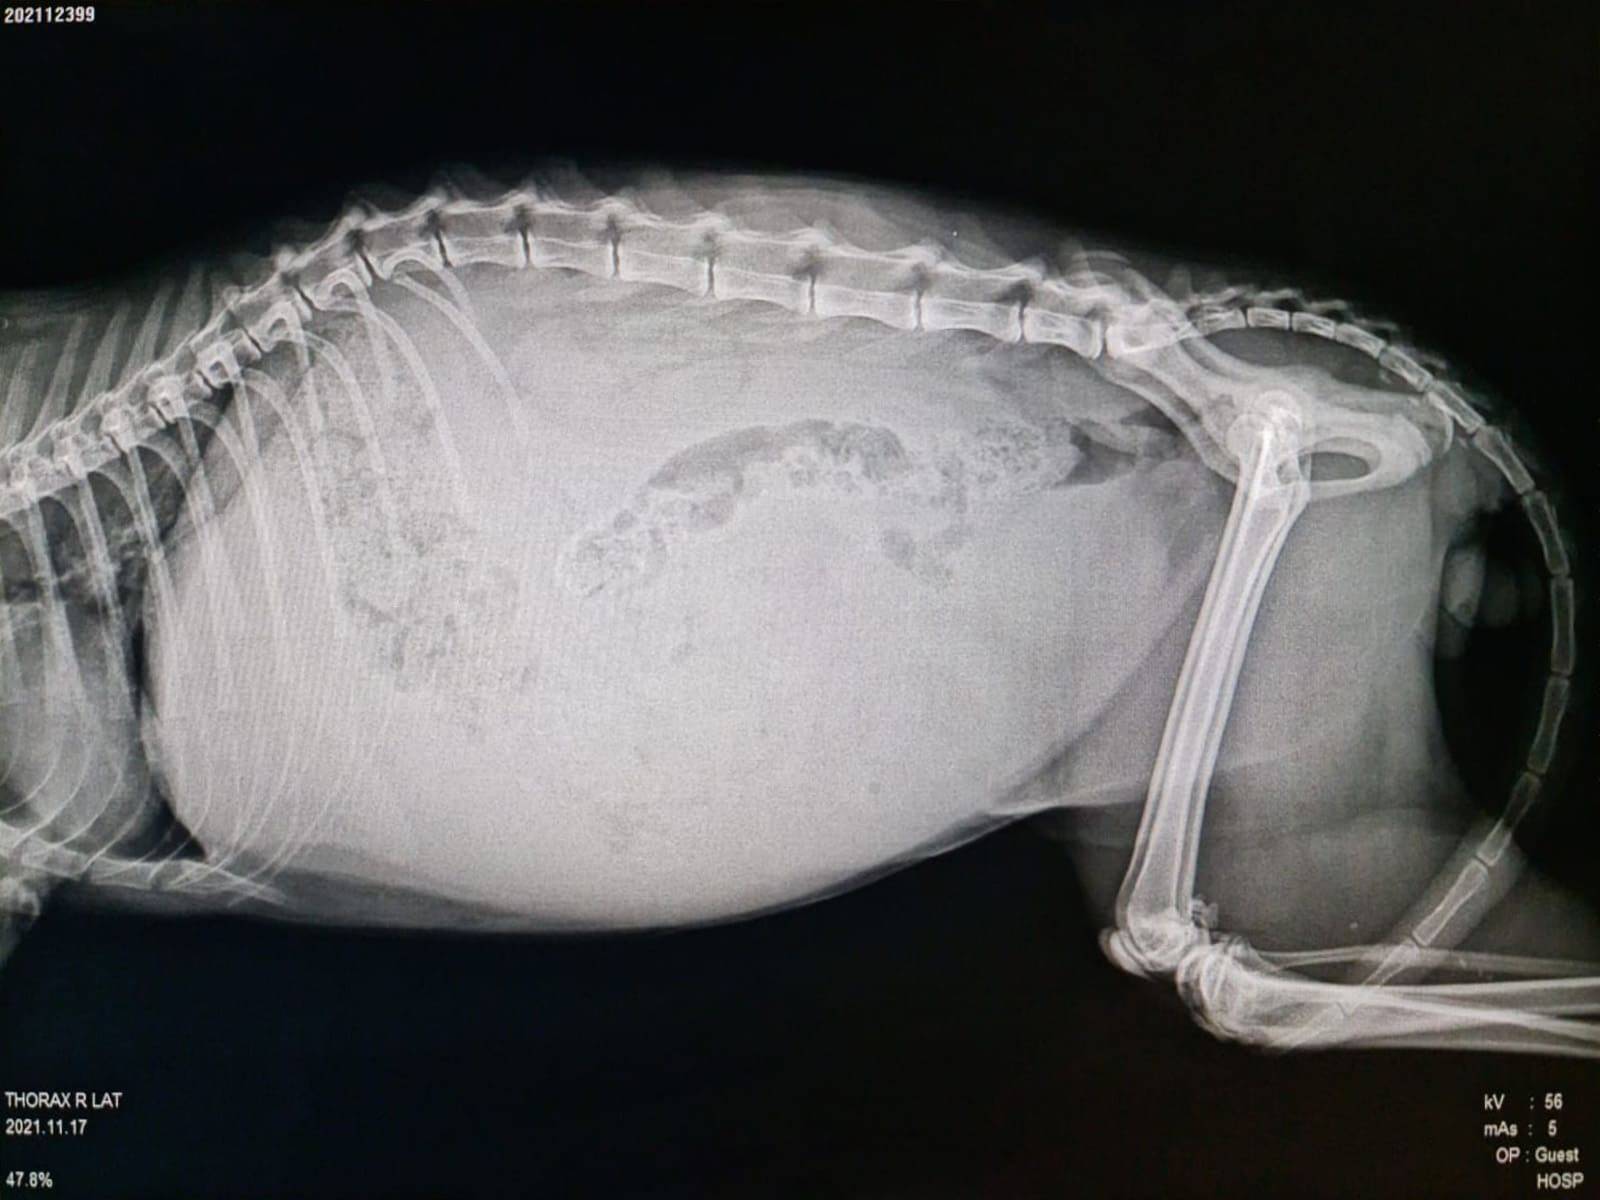 Röntgenbild einer FIP Katze - Flüssigkeitsansammlung im Bauchraum